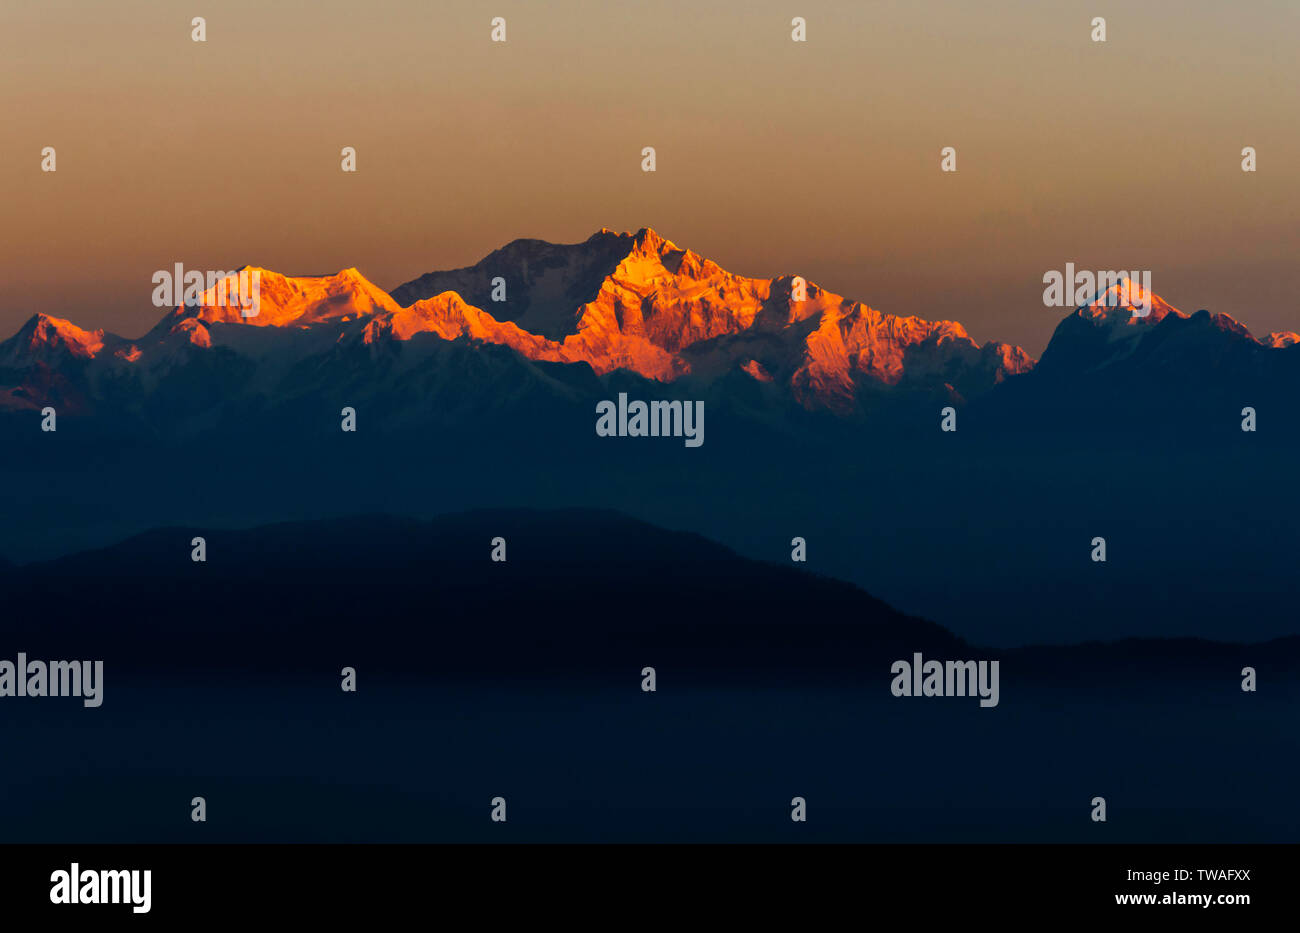 Kanchenjunga peaks seen from Sikkim, India. Stock Photo